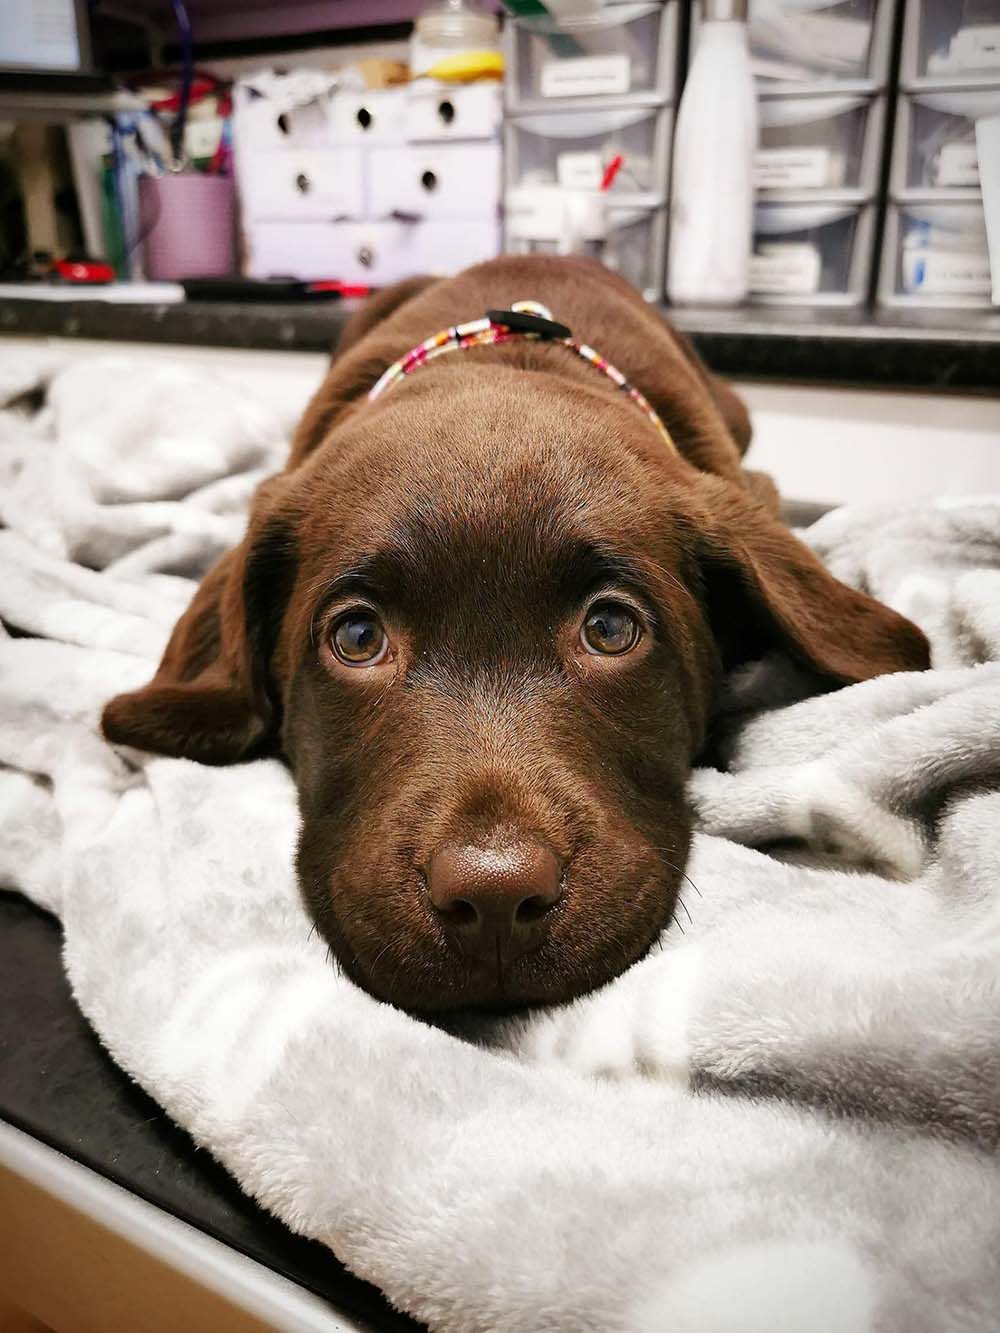 Sad brown dog with big eyes